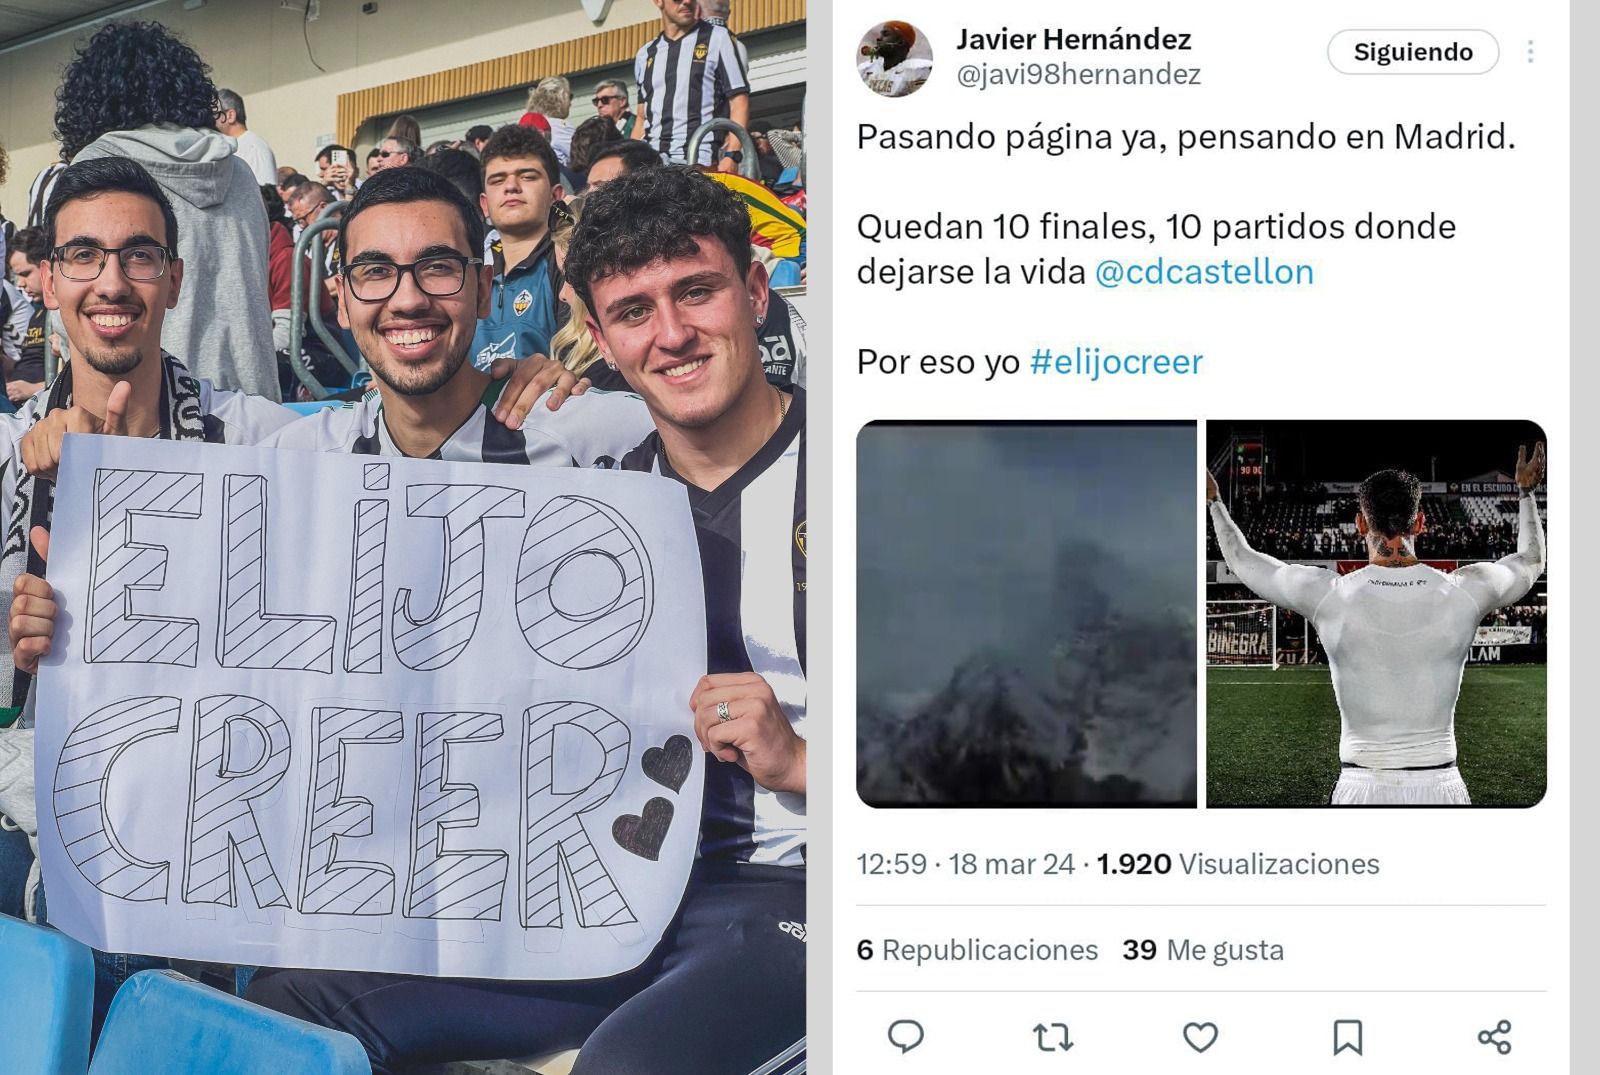 Tres aficionados albinegros posan con una pancarta en el desplazamiento a Madrid. A la derecha, el tuit original.